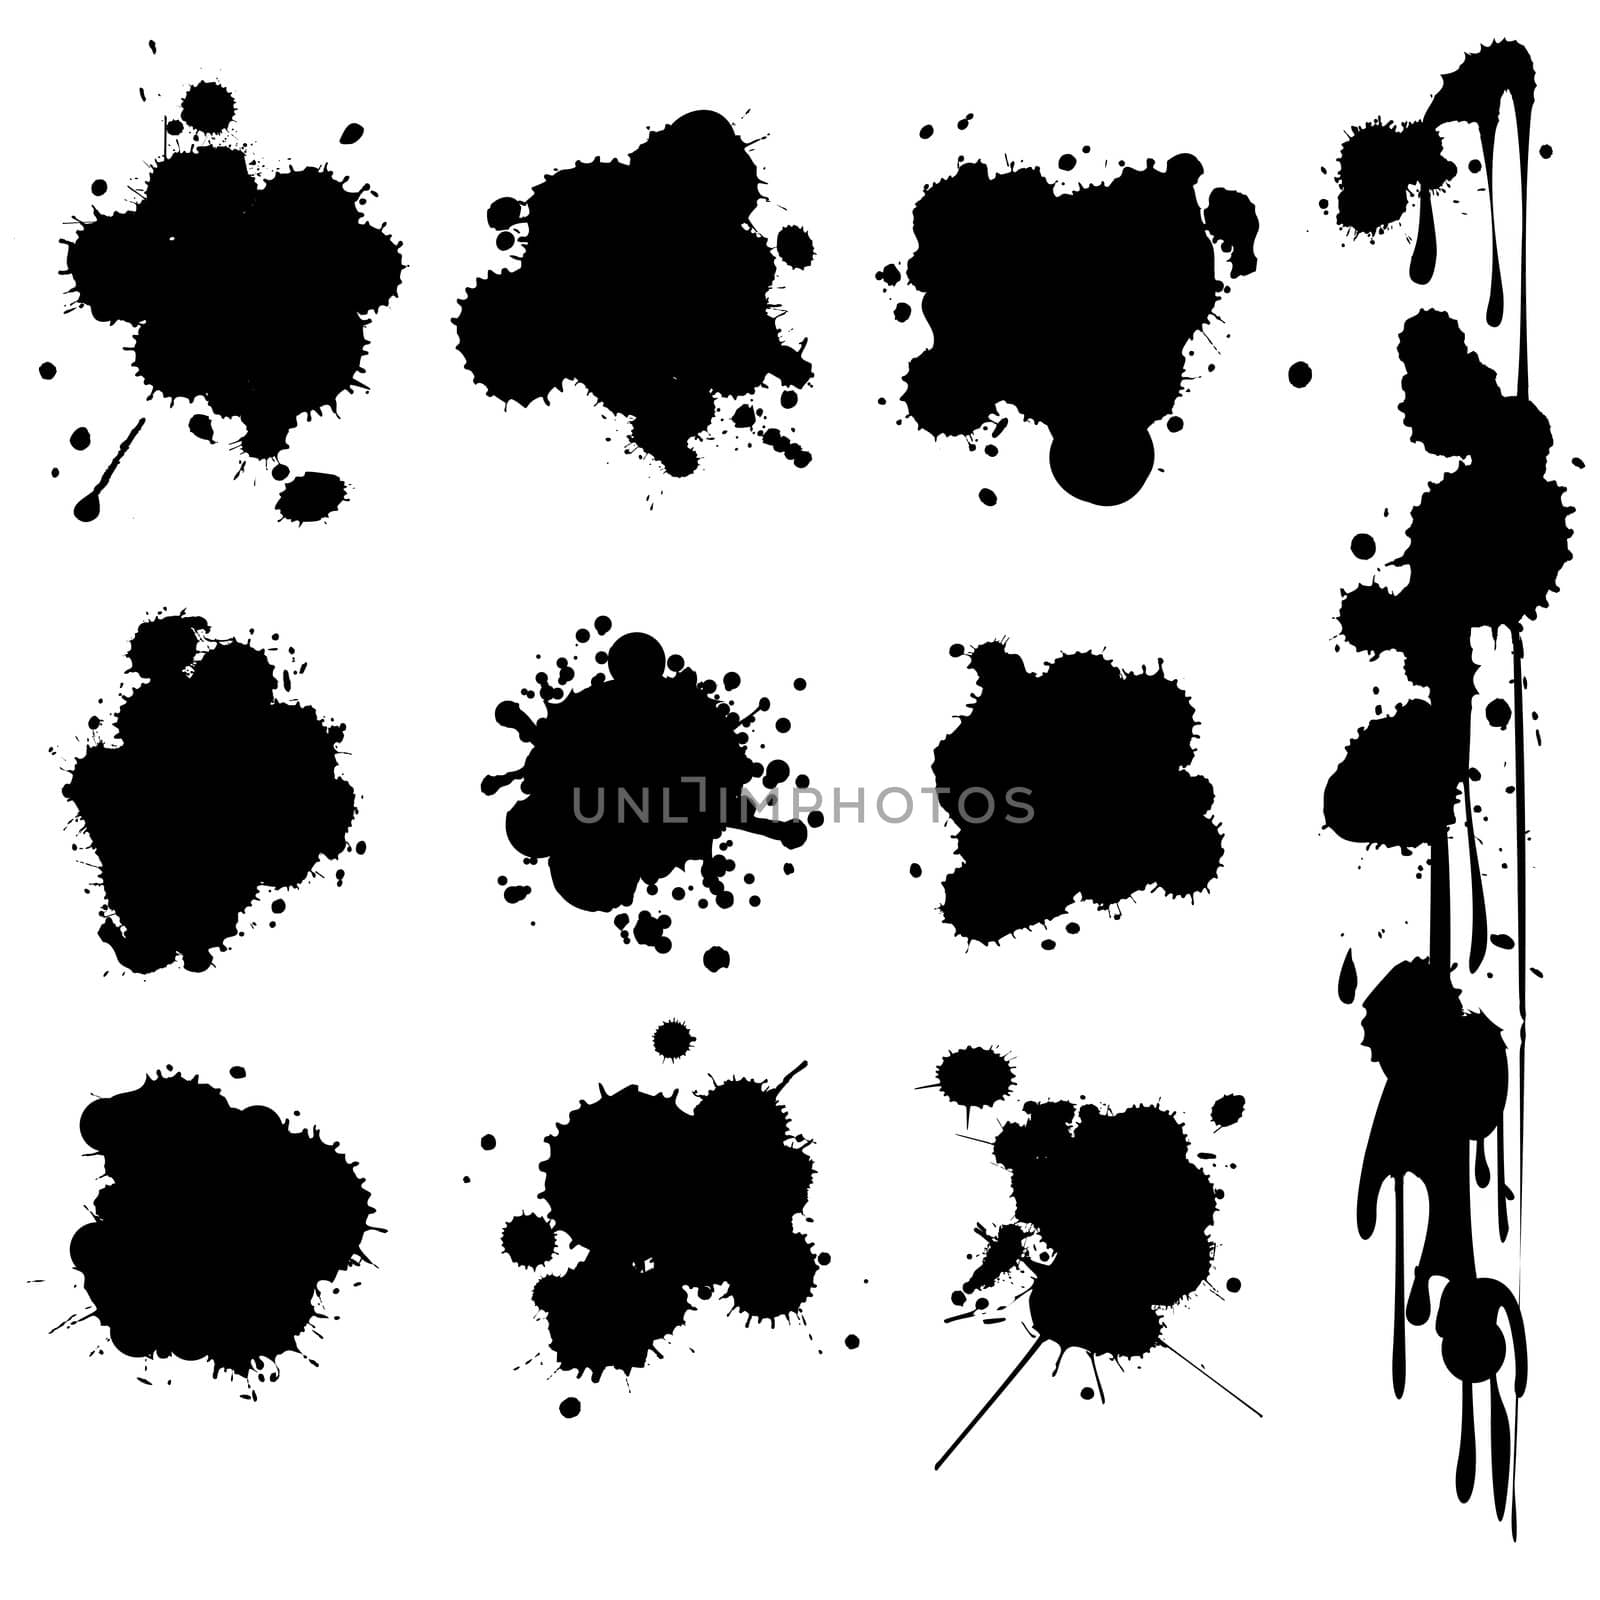 Ink spots by Lirch